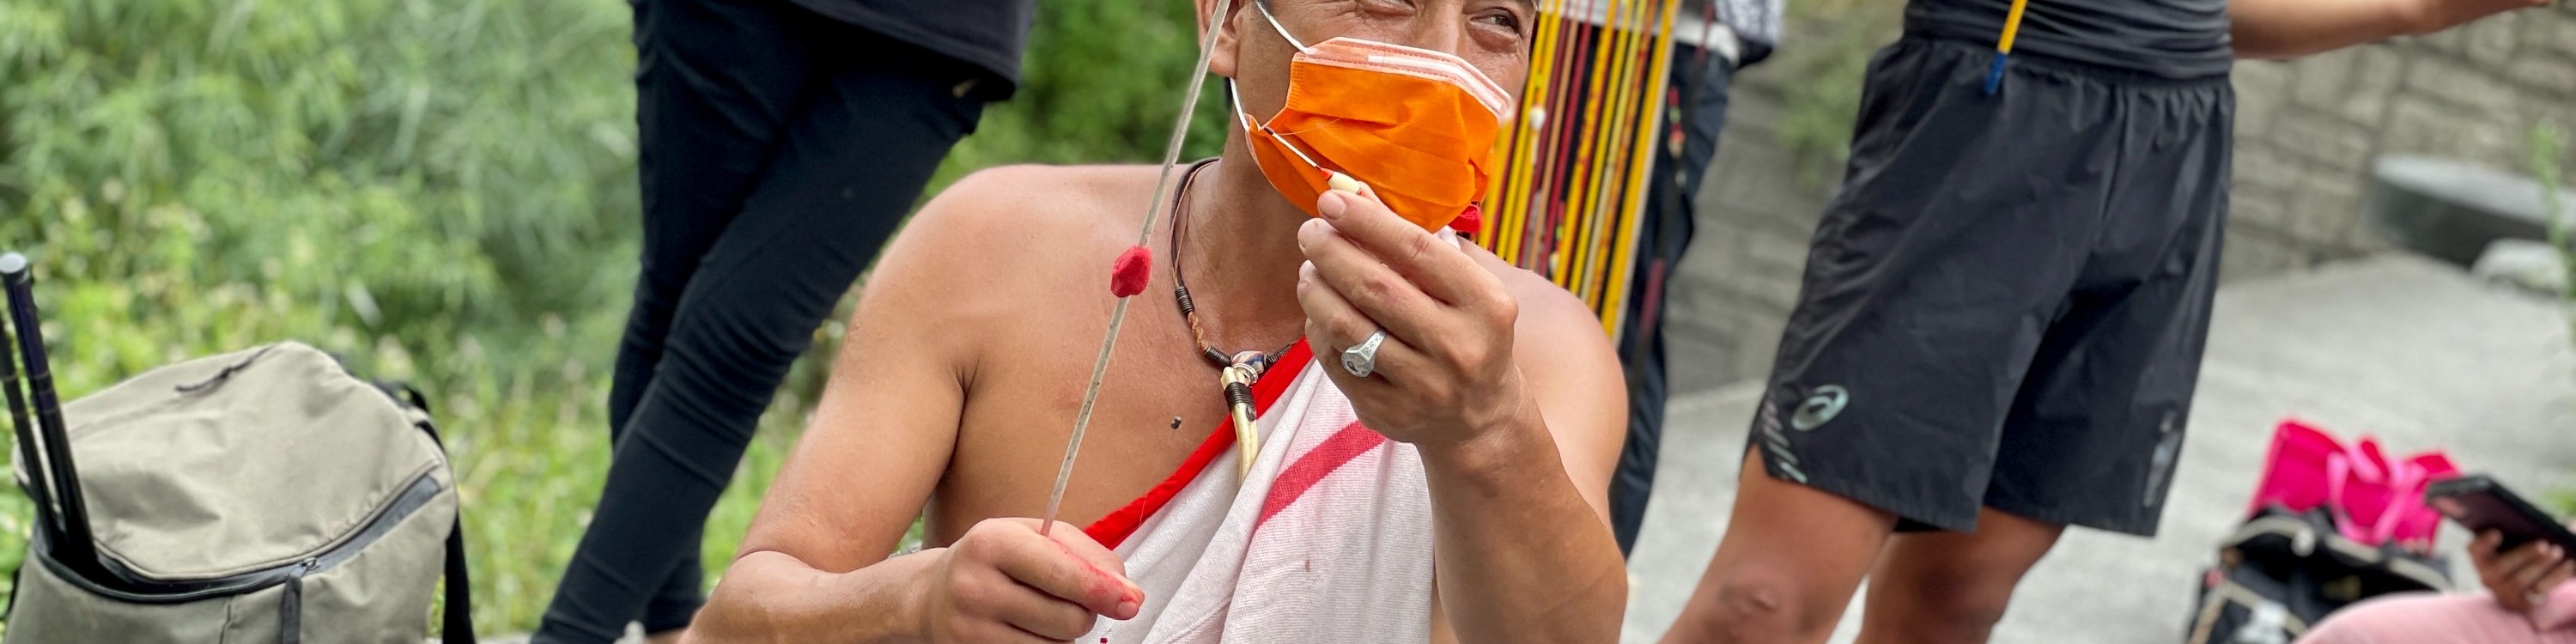 宜蘭寒溪部落: 泰雅獵人溪釣野炊 - 部落導覽與體驗